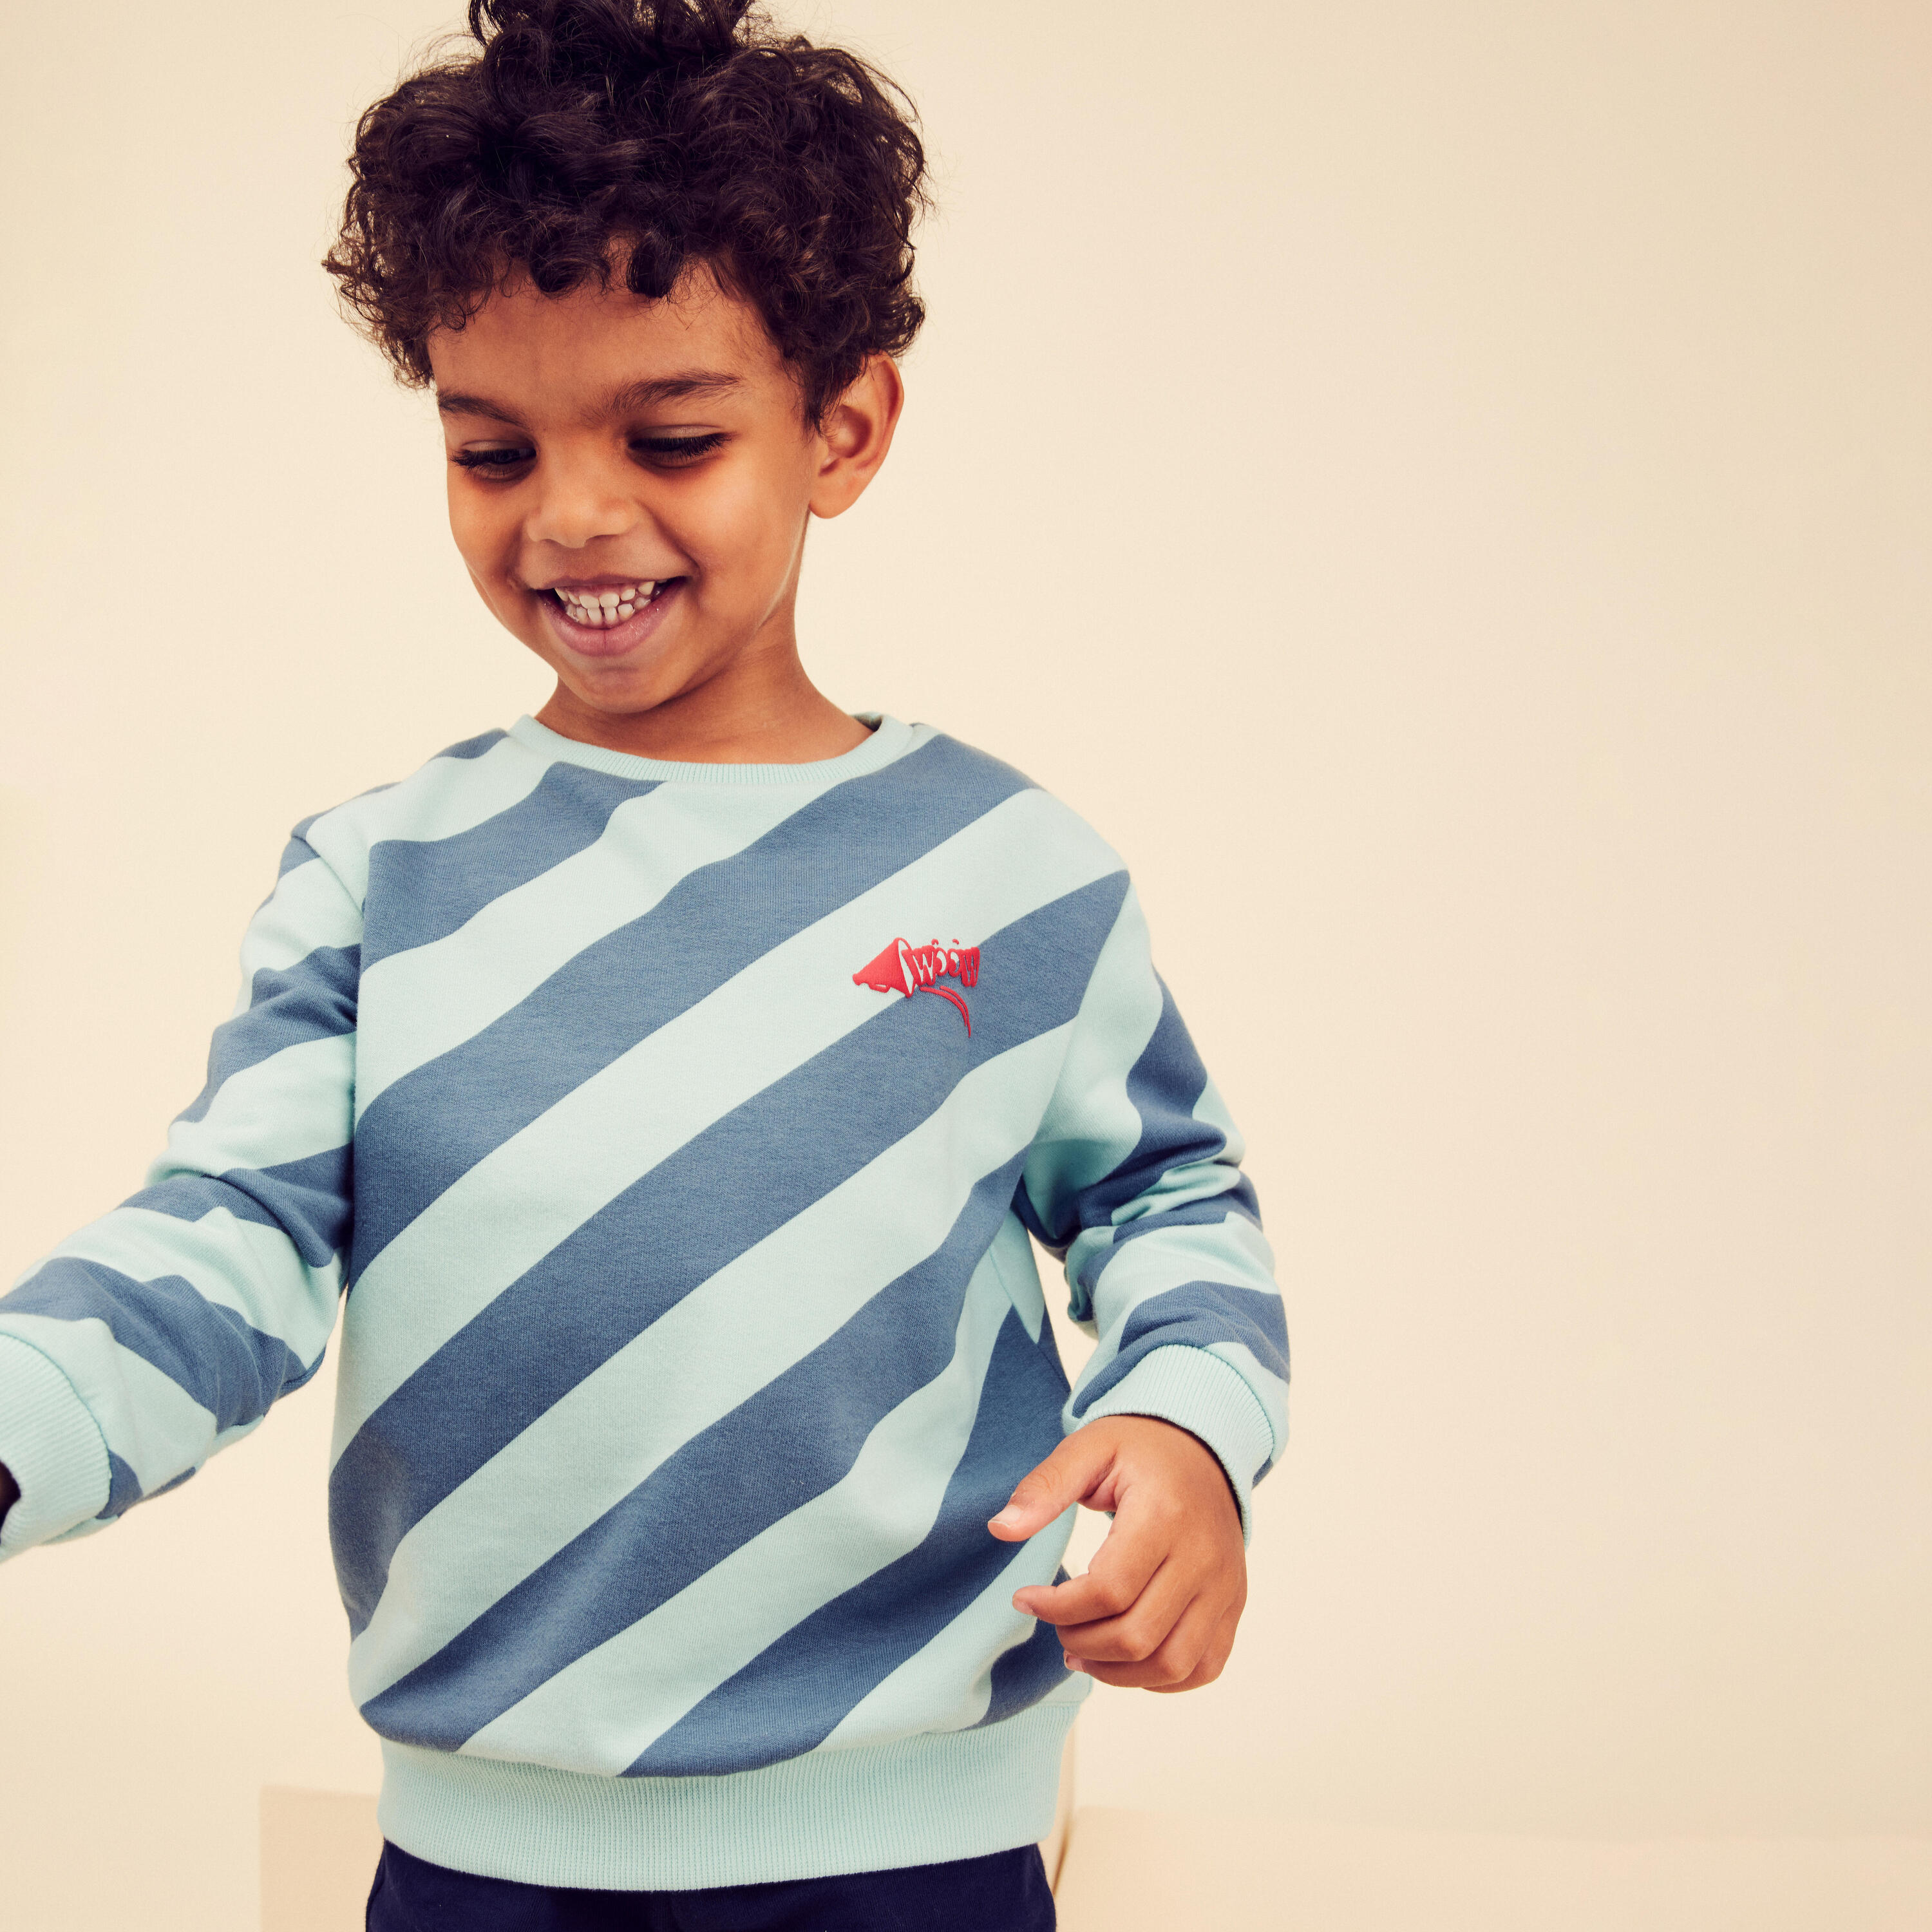 DOMYOS Kids' Basic Sweatshirt - Blue/Turquoise Stripes